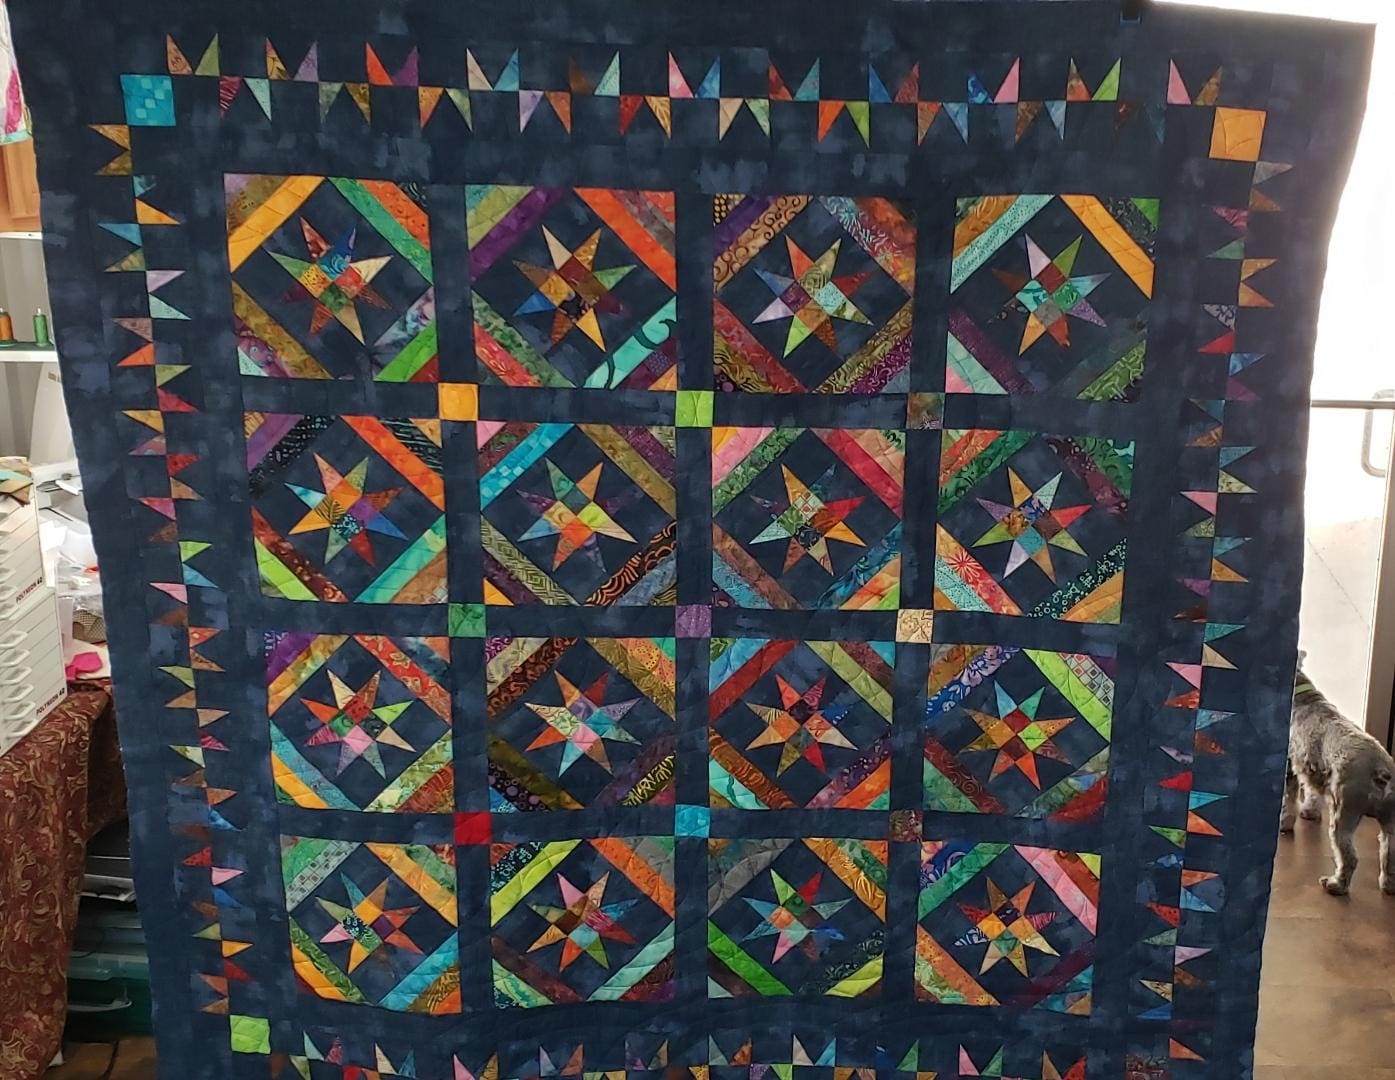 A tie dye quilt